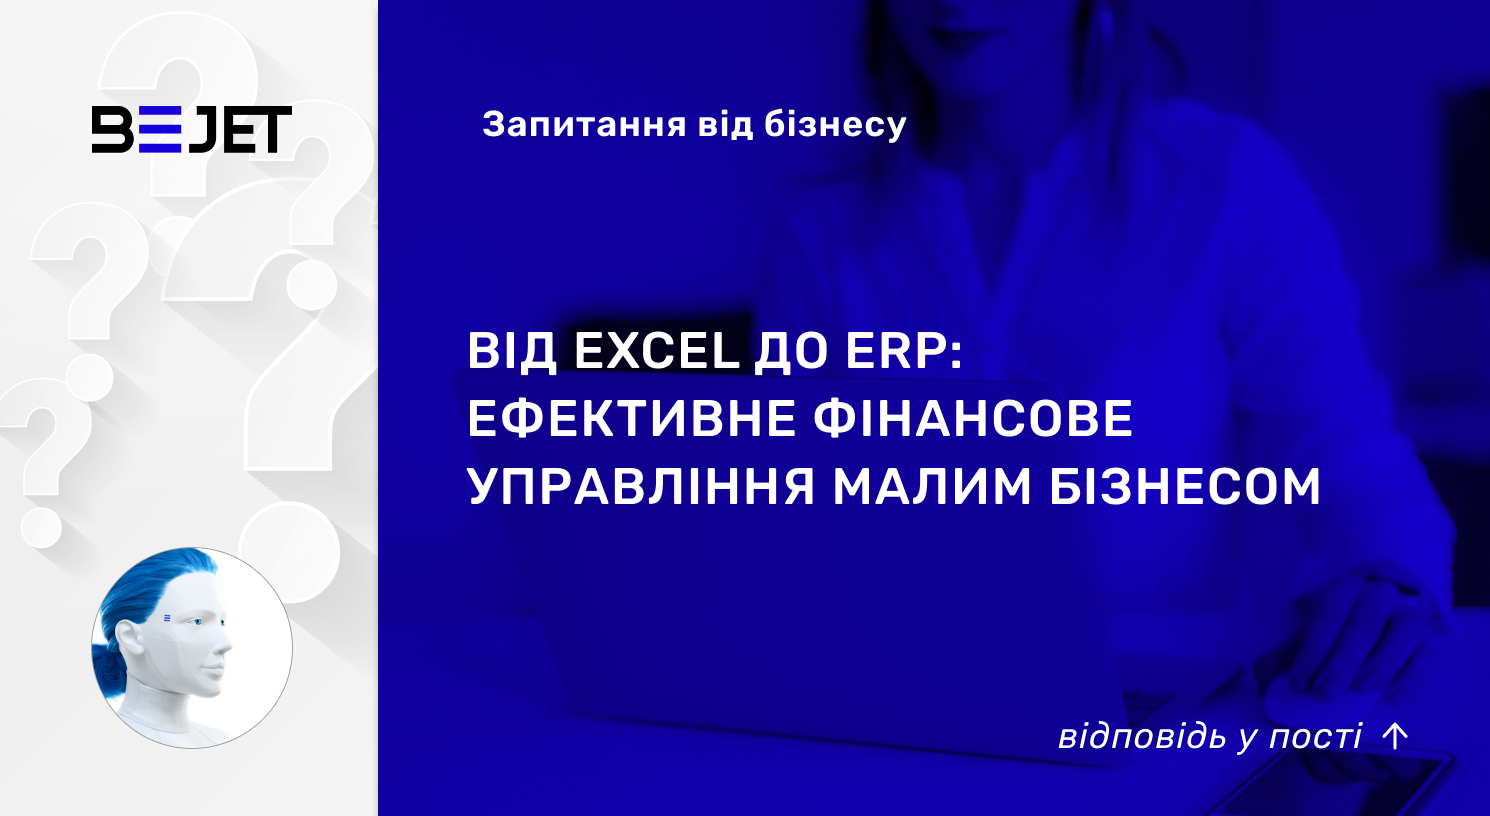 Від Excel до ERP: ефективне фінансове управління малим бізнесом